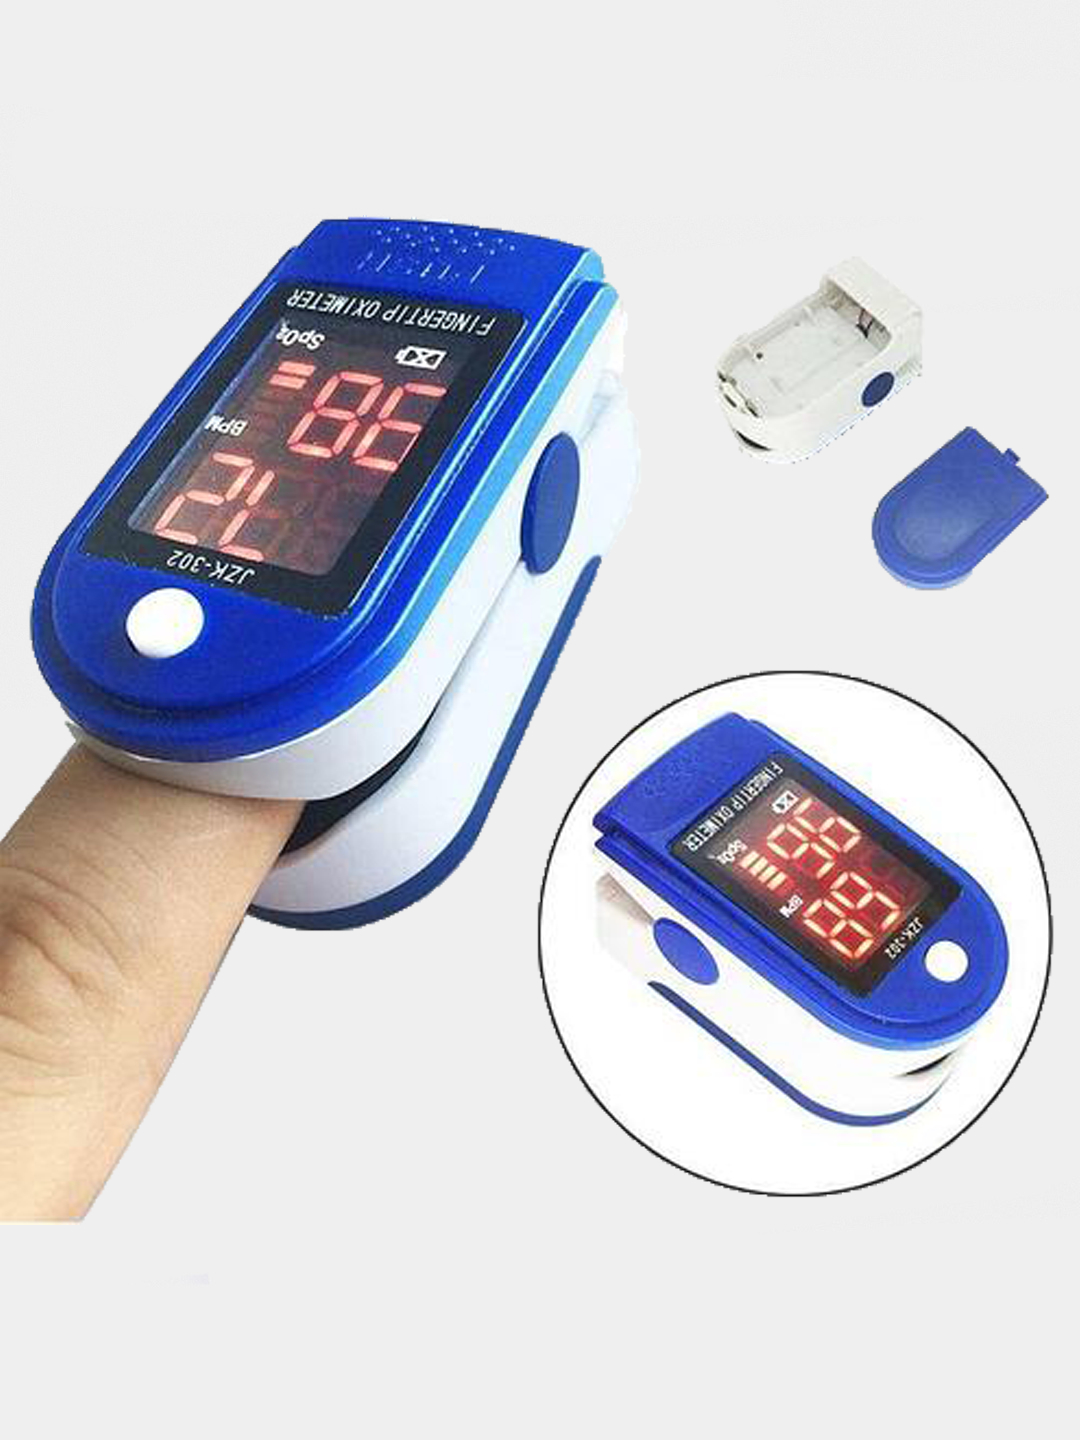 Измерить кислород в воздухе. Пульсоксиметр медицинский Pulse Oximeter. Измерение насыщения крови кислородом (сатурация) пульсоксиметром. Прибор для измерения сатурации на палец. Пульсе прибор для измерения сатурации кислорода в крови.